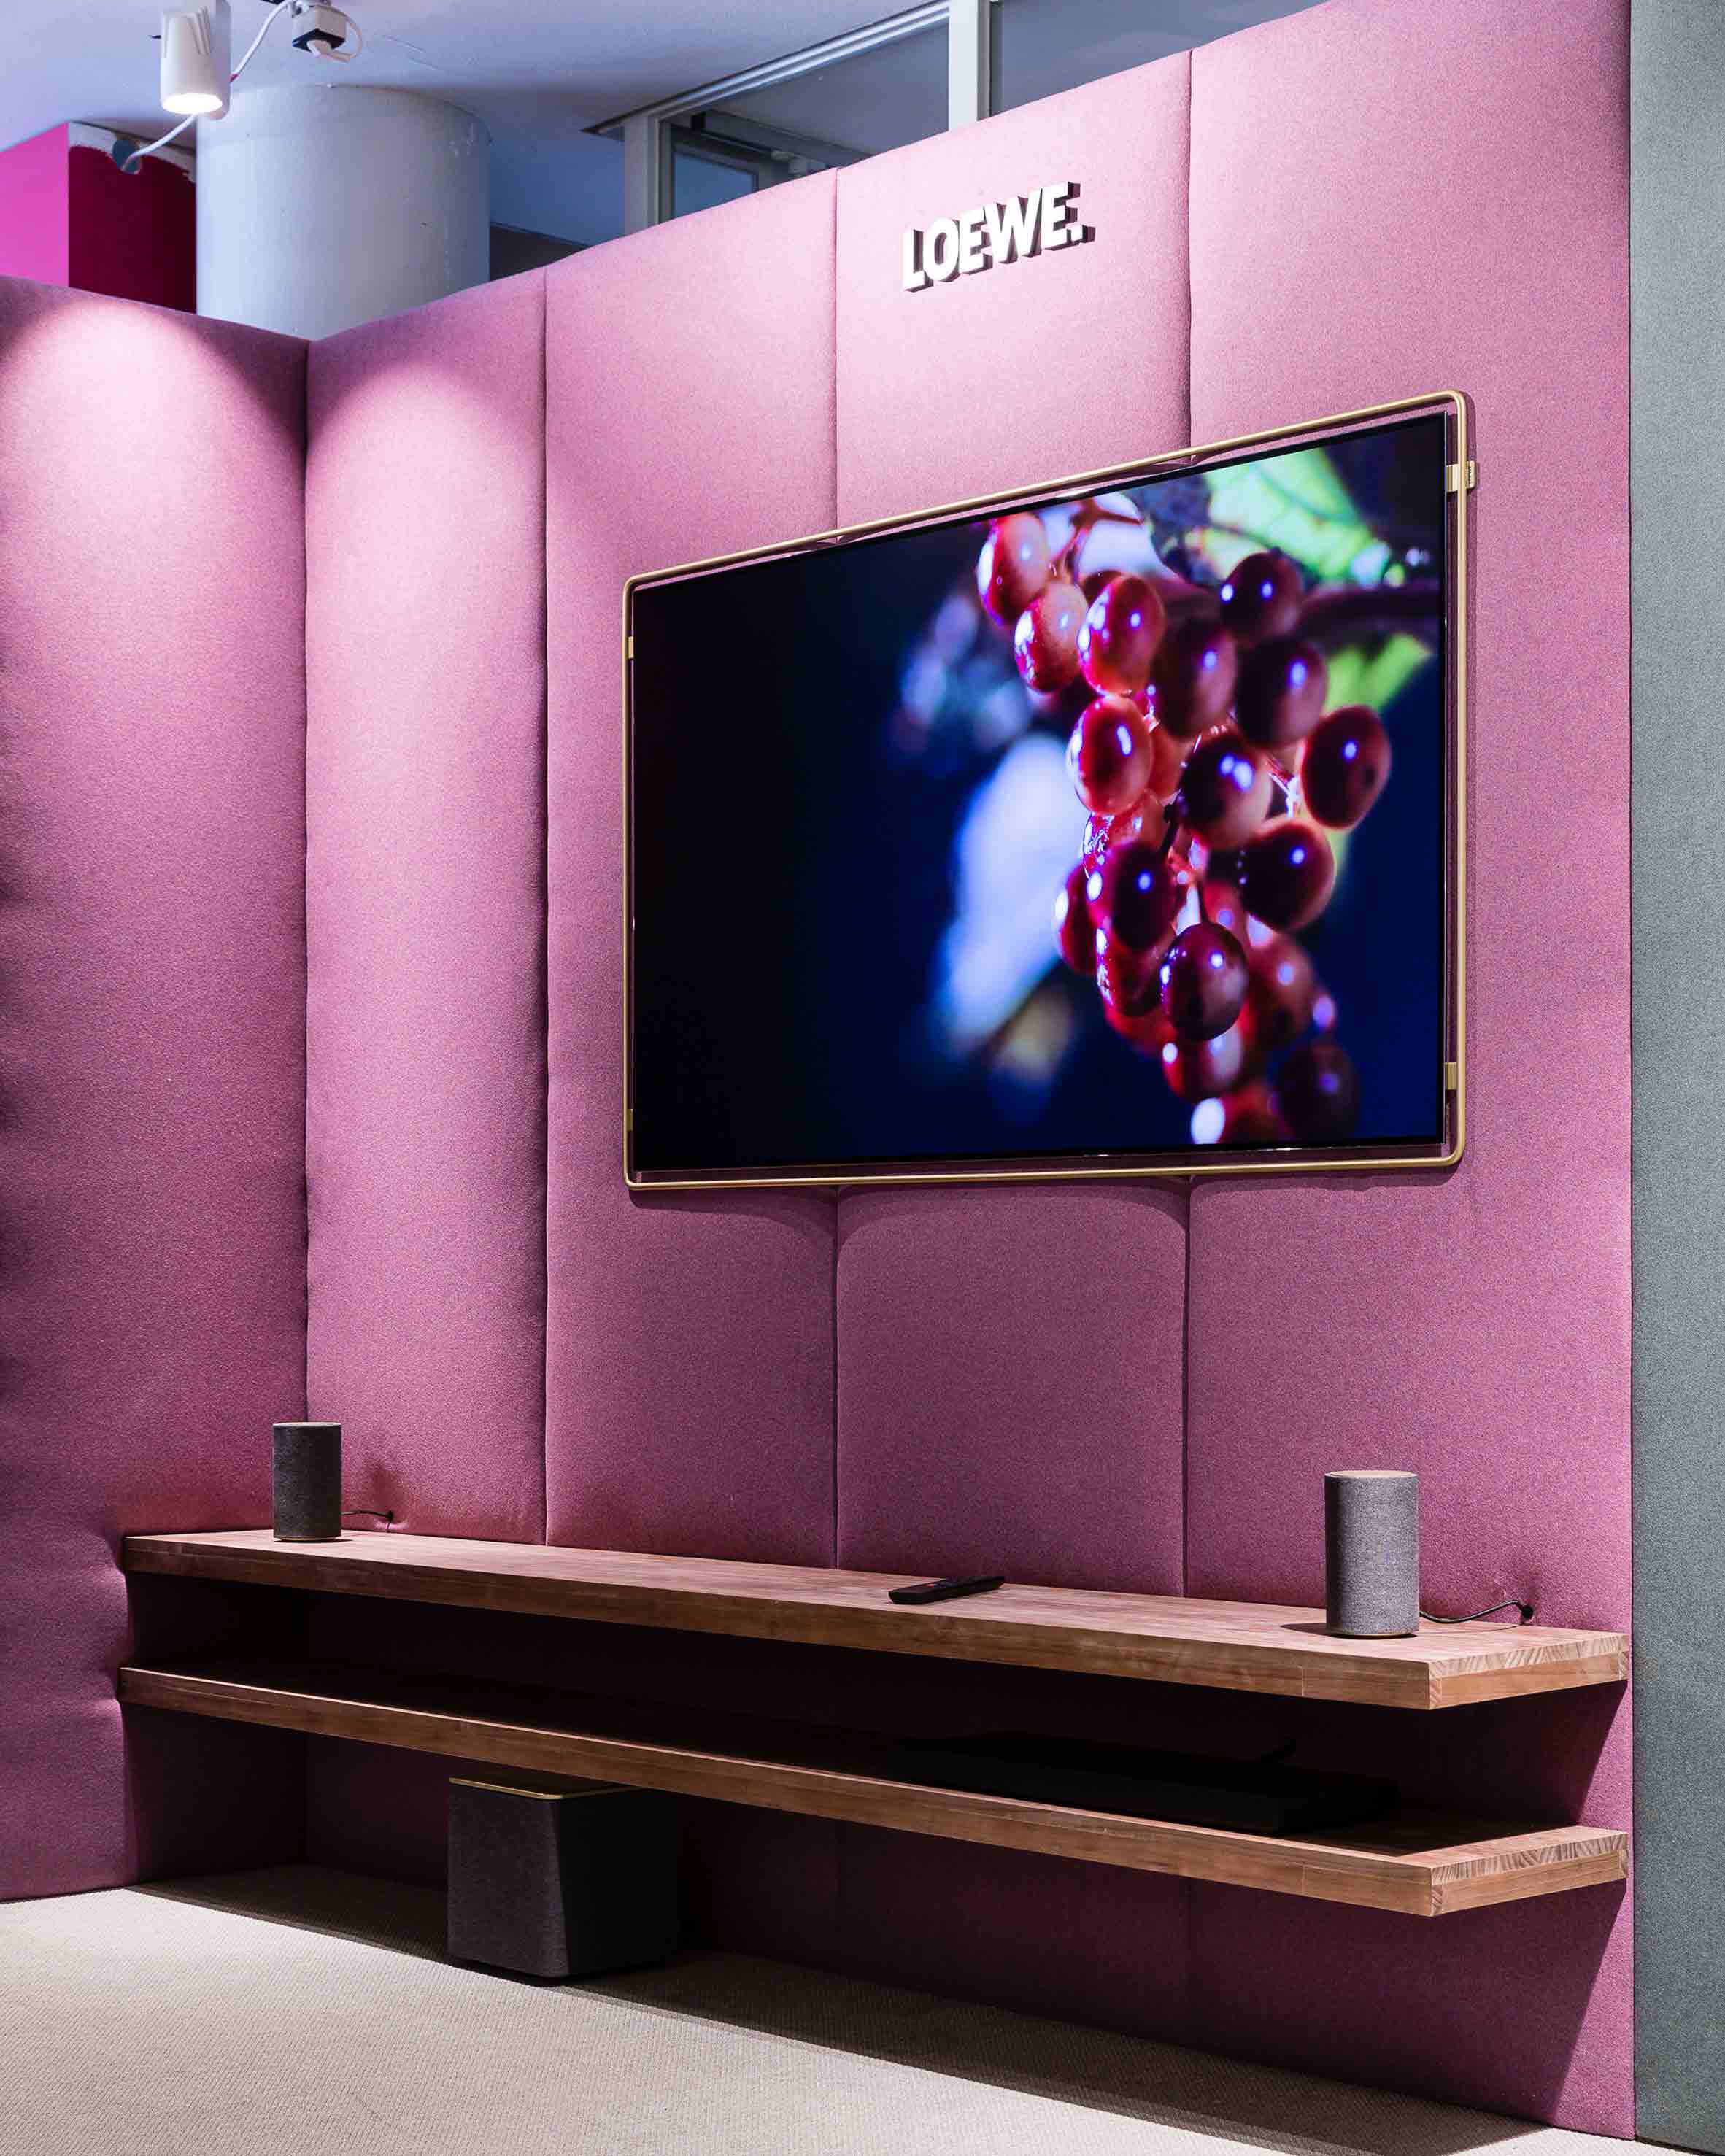 Loewe Bild X television concept by Bodo Sperlein